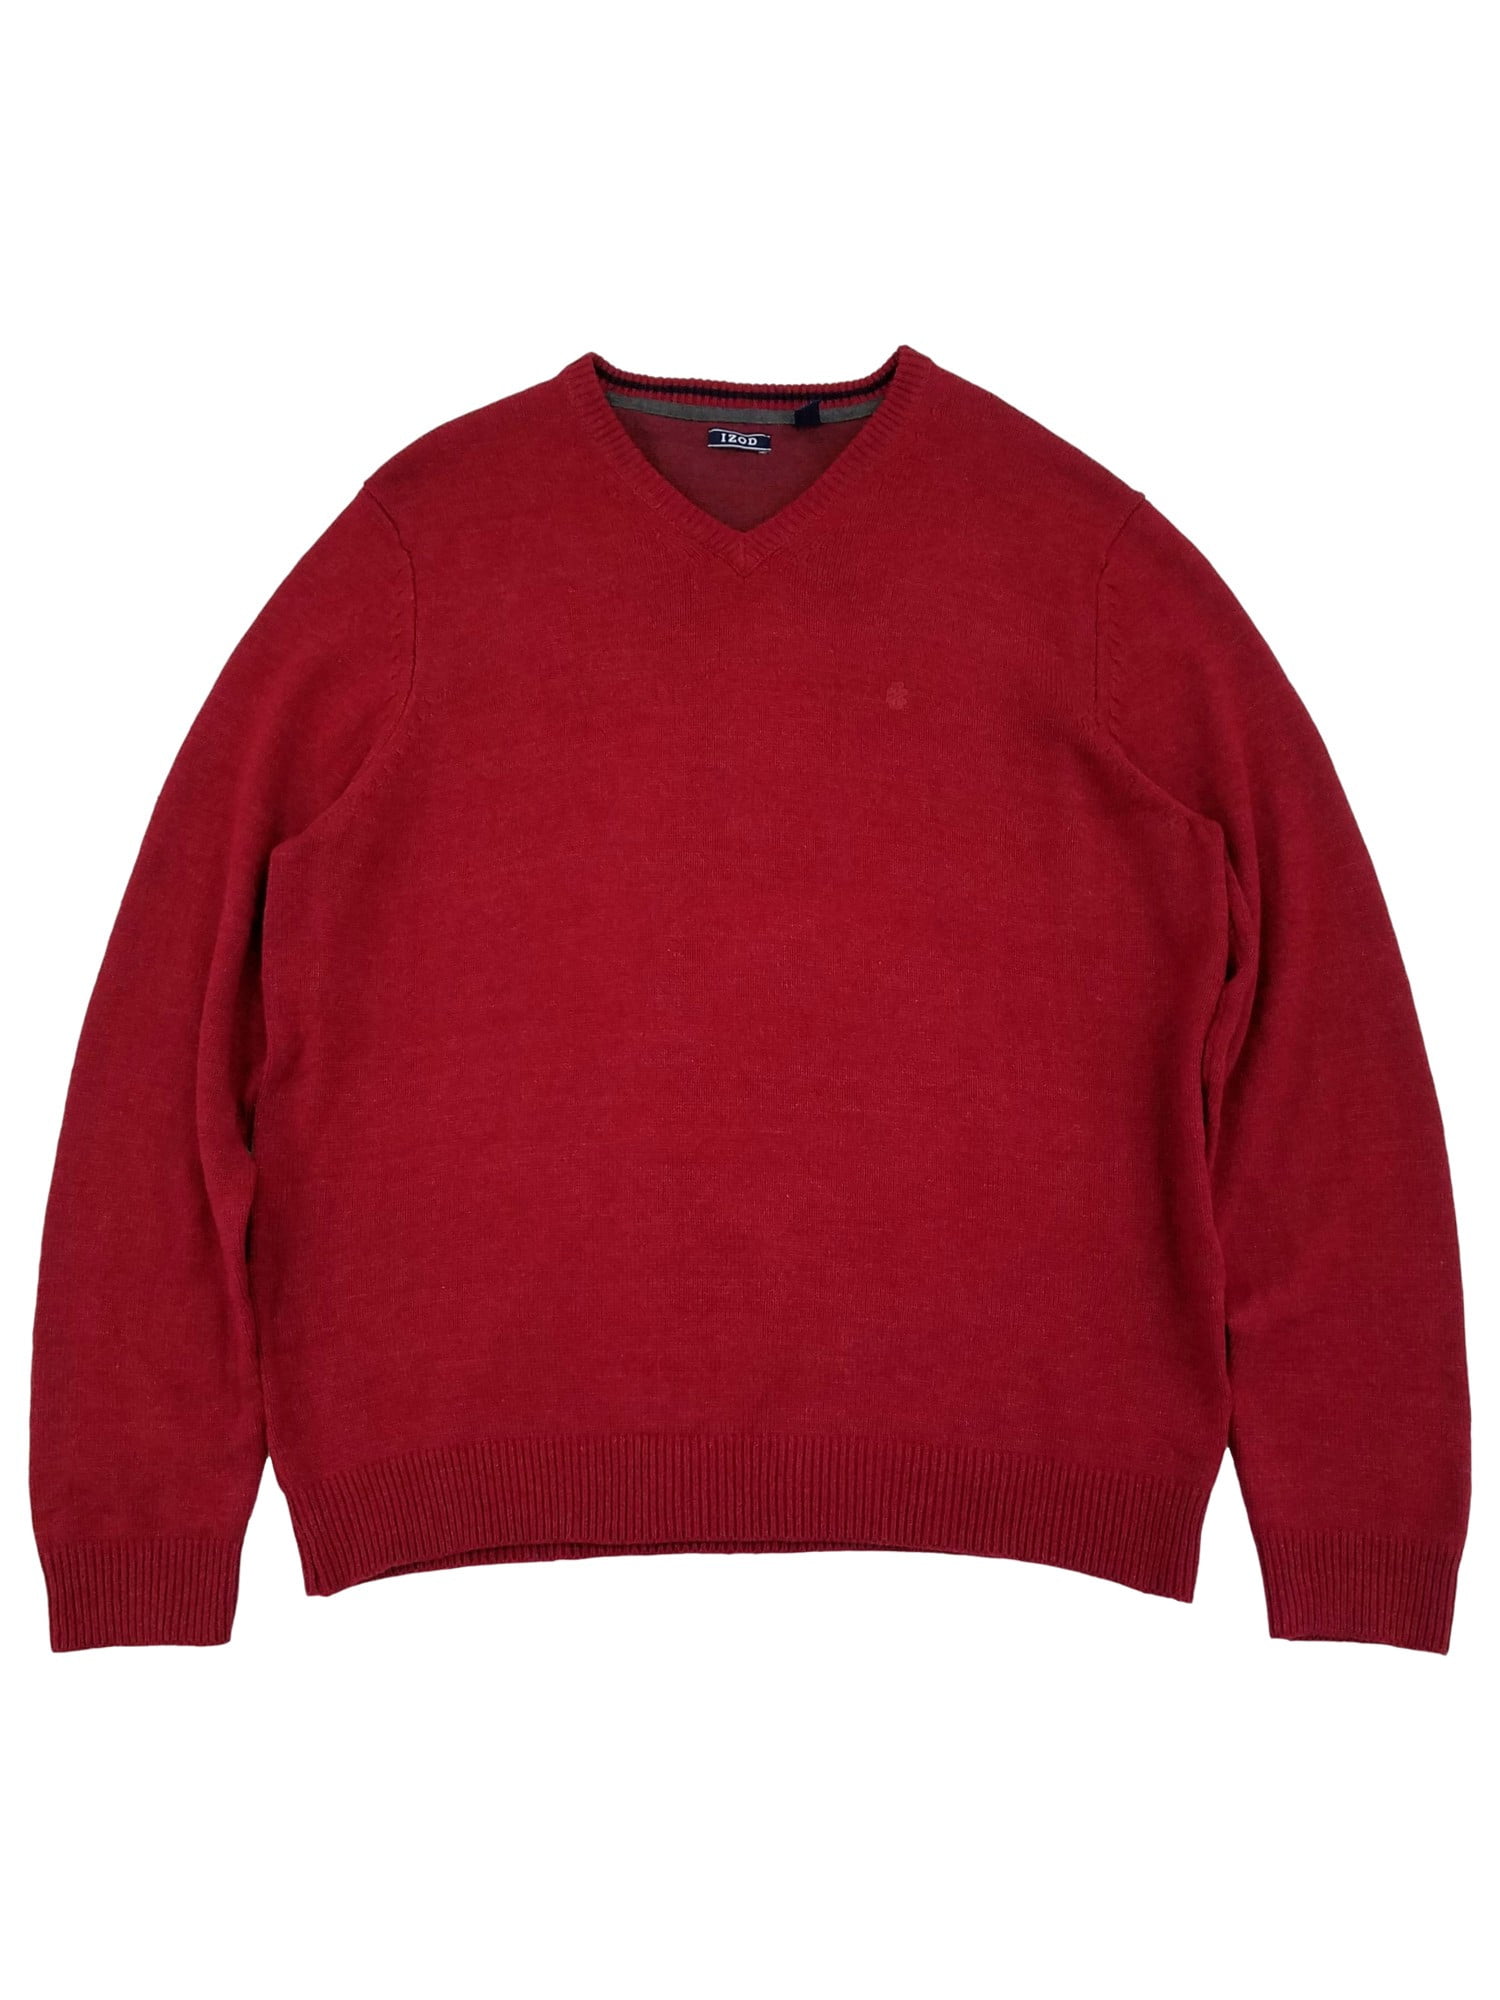 IZOD Mens Biking Red Premium Essentials Lightweight V-Neck Sweater XXL -  Walmart.com